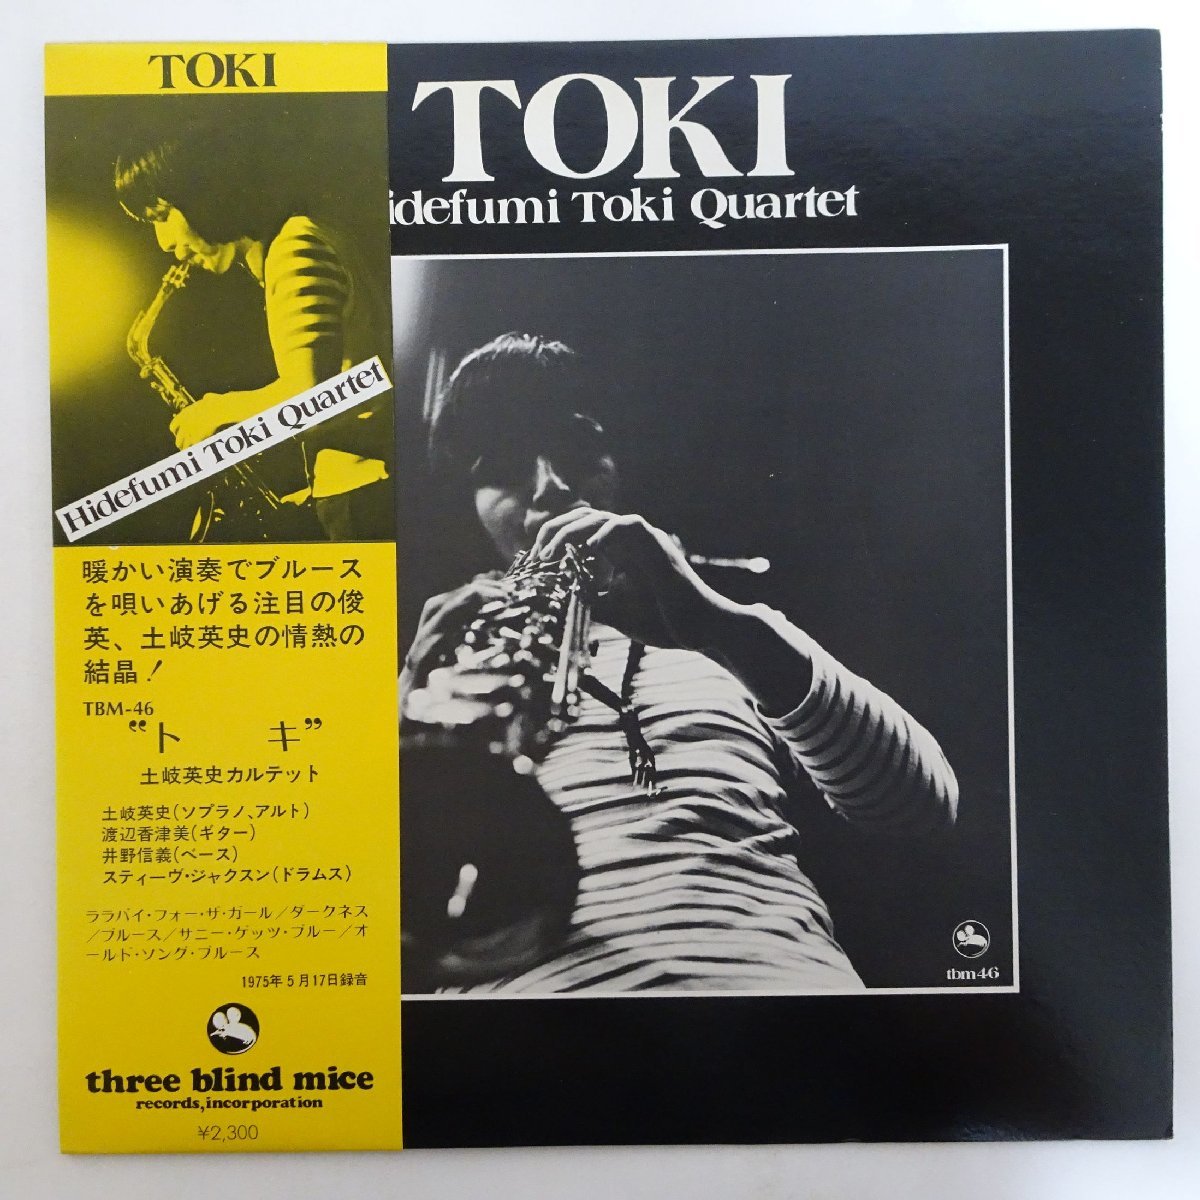 Hidefumi Toki Quartet